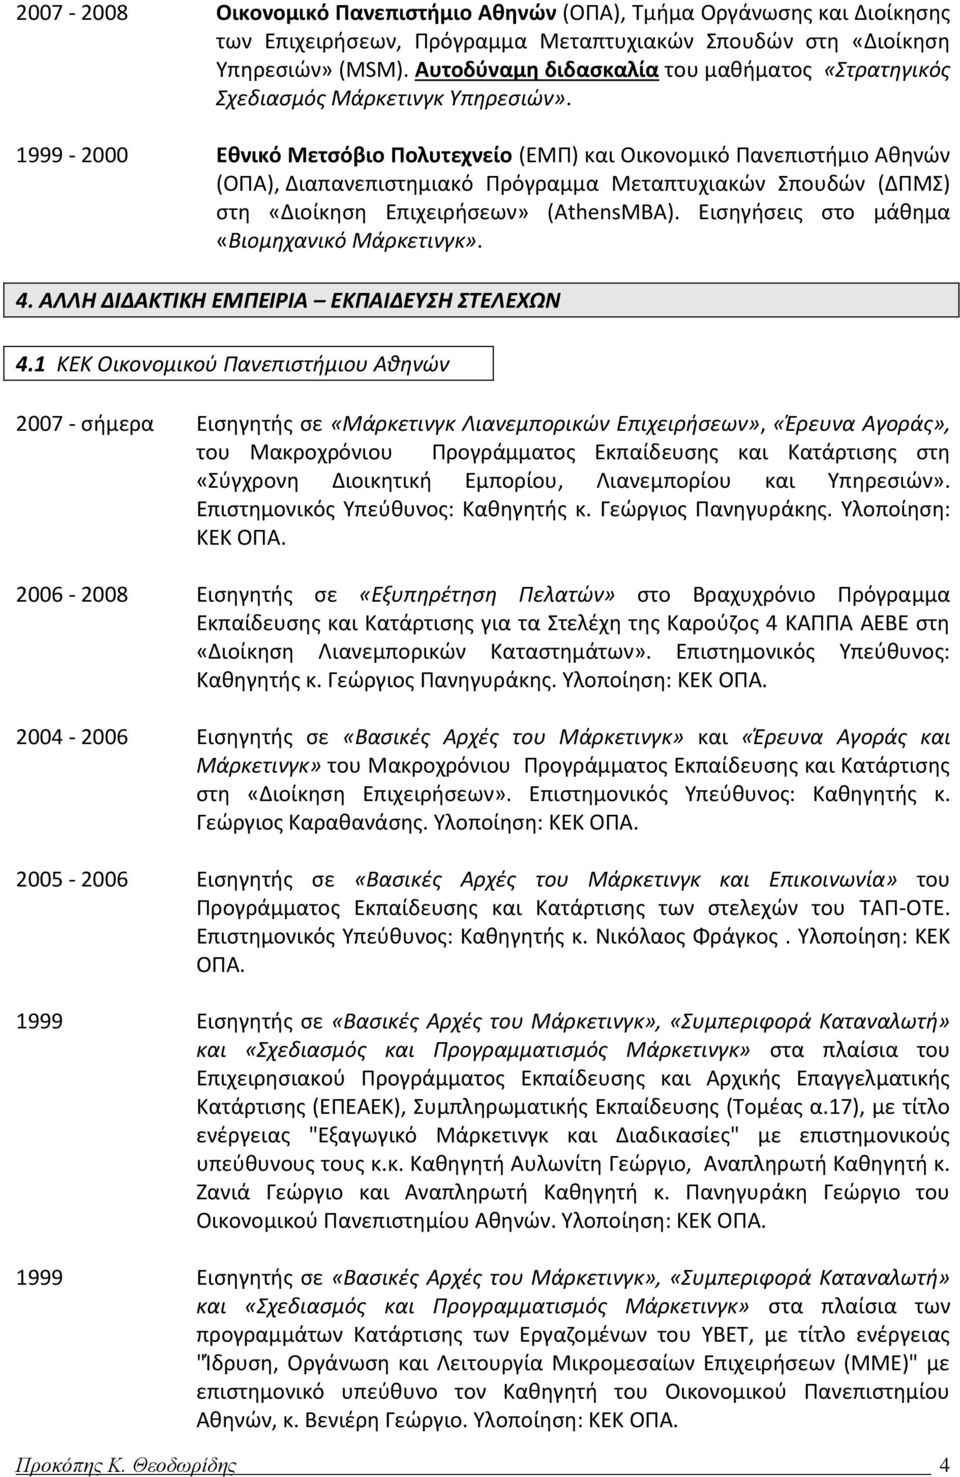 1999-2000 Εθνικό Μετσόβιο Πολυτεχνείο (ΕΜΠ) και Οικονομικό Πανεπιστήμιο Αθηνών (ΟΠΑ), Διαπανεπιστημιακό Πρόγραμμα Μεταπτυχιακών Σπουδών (ΔΠΜΣ) στη «Διοίκηση Επιχειρήσεων» (AthensMBA).